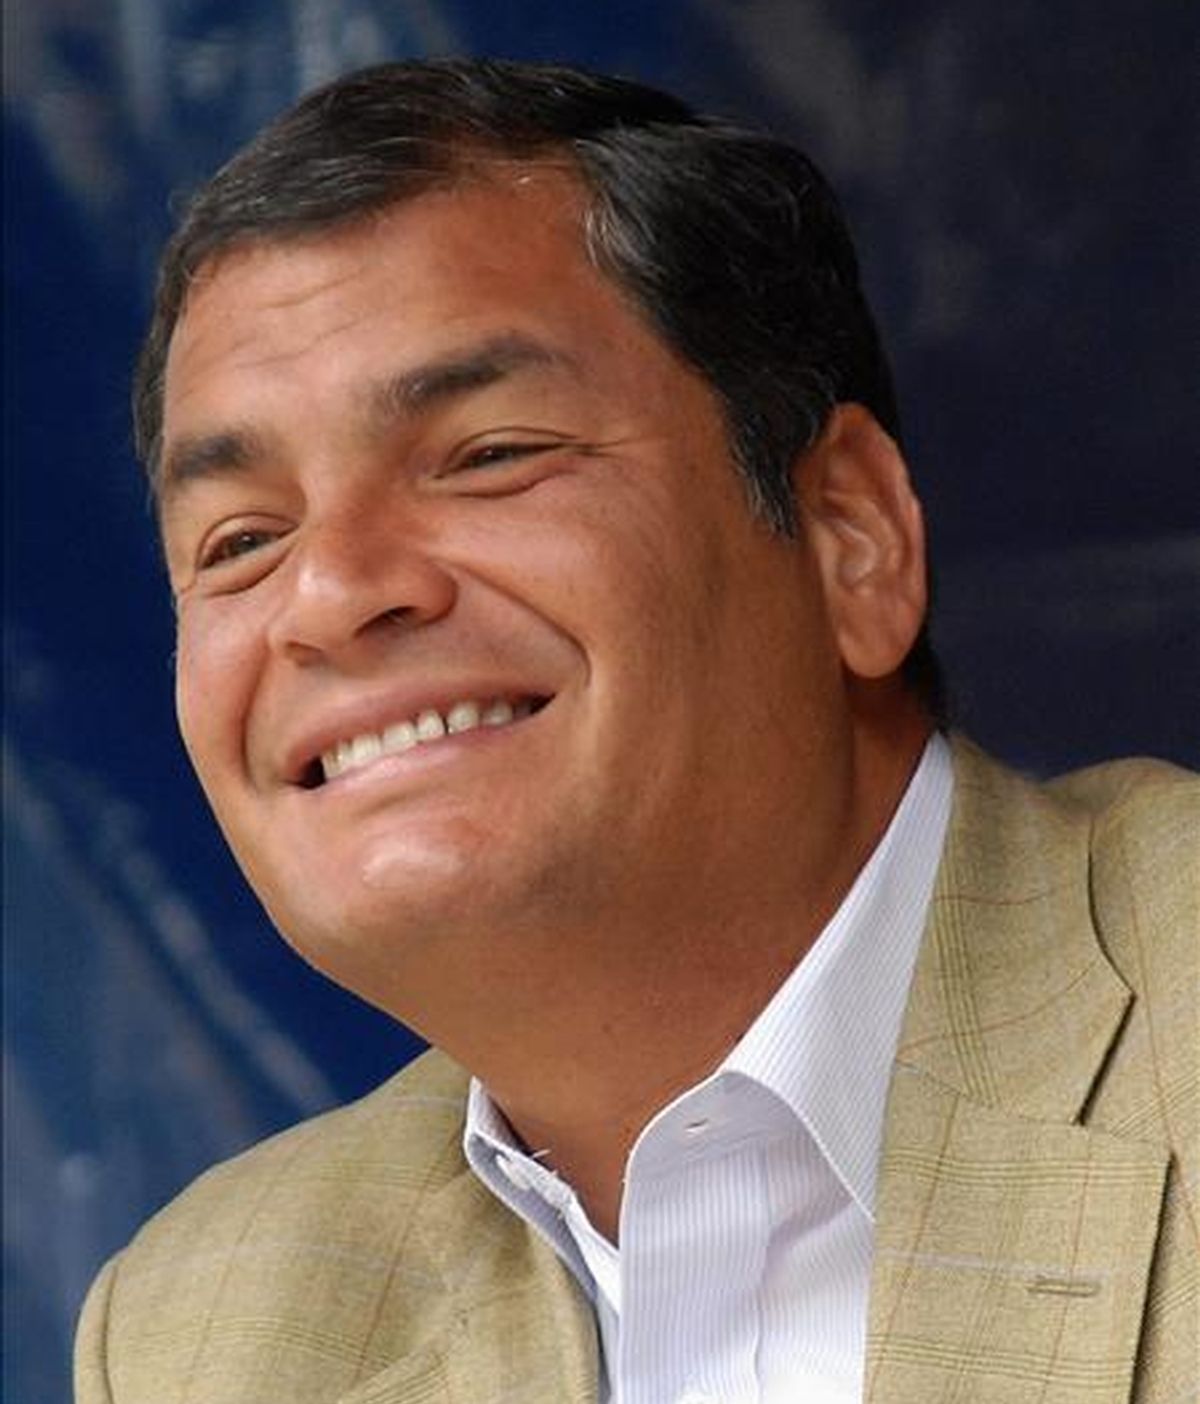 El sondeo muestra que el respaldo a Rafael Correa, que busca la reelección en los comicios generales del 26 de abril, aumentó 2,5 puntos desde el 10 de marzo. EFE/Archivo